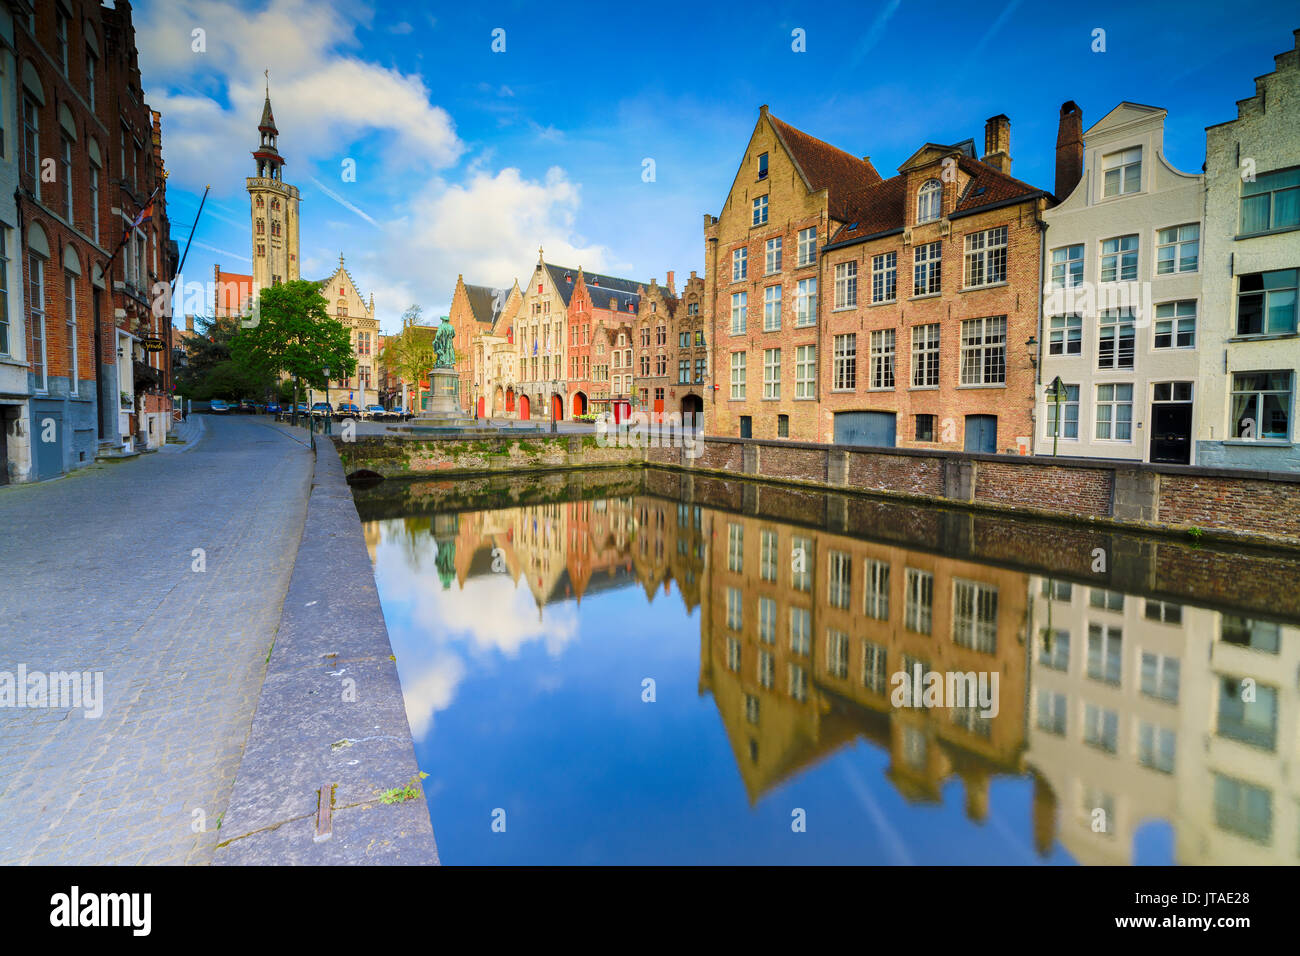 Il cielo luminoso all'alba su edifici storici e le case del centro città si riflette nel canale di Bruges, Fiandre Occidentali, Belgio, Europa Foto Stock